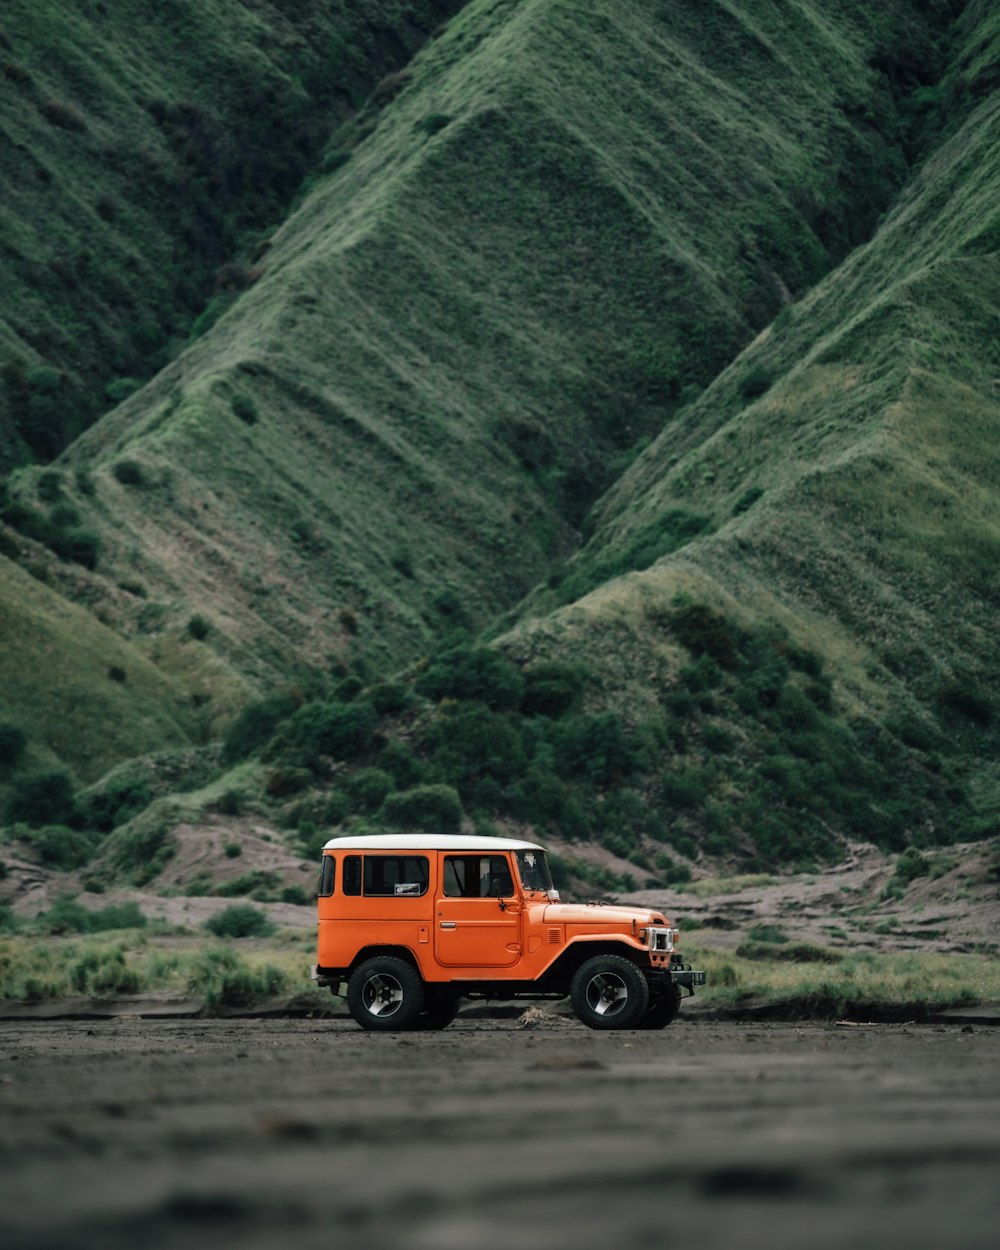 Une jeep orange est garée devant une montagne